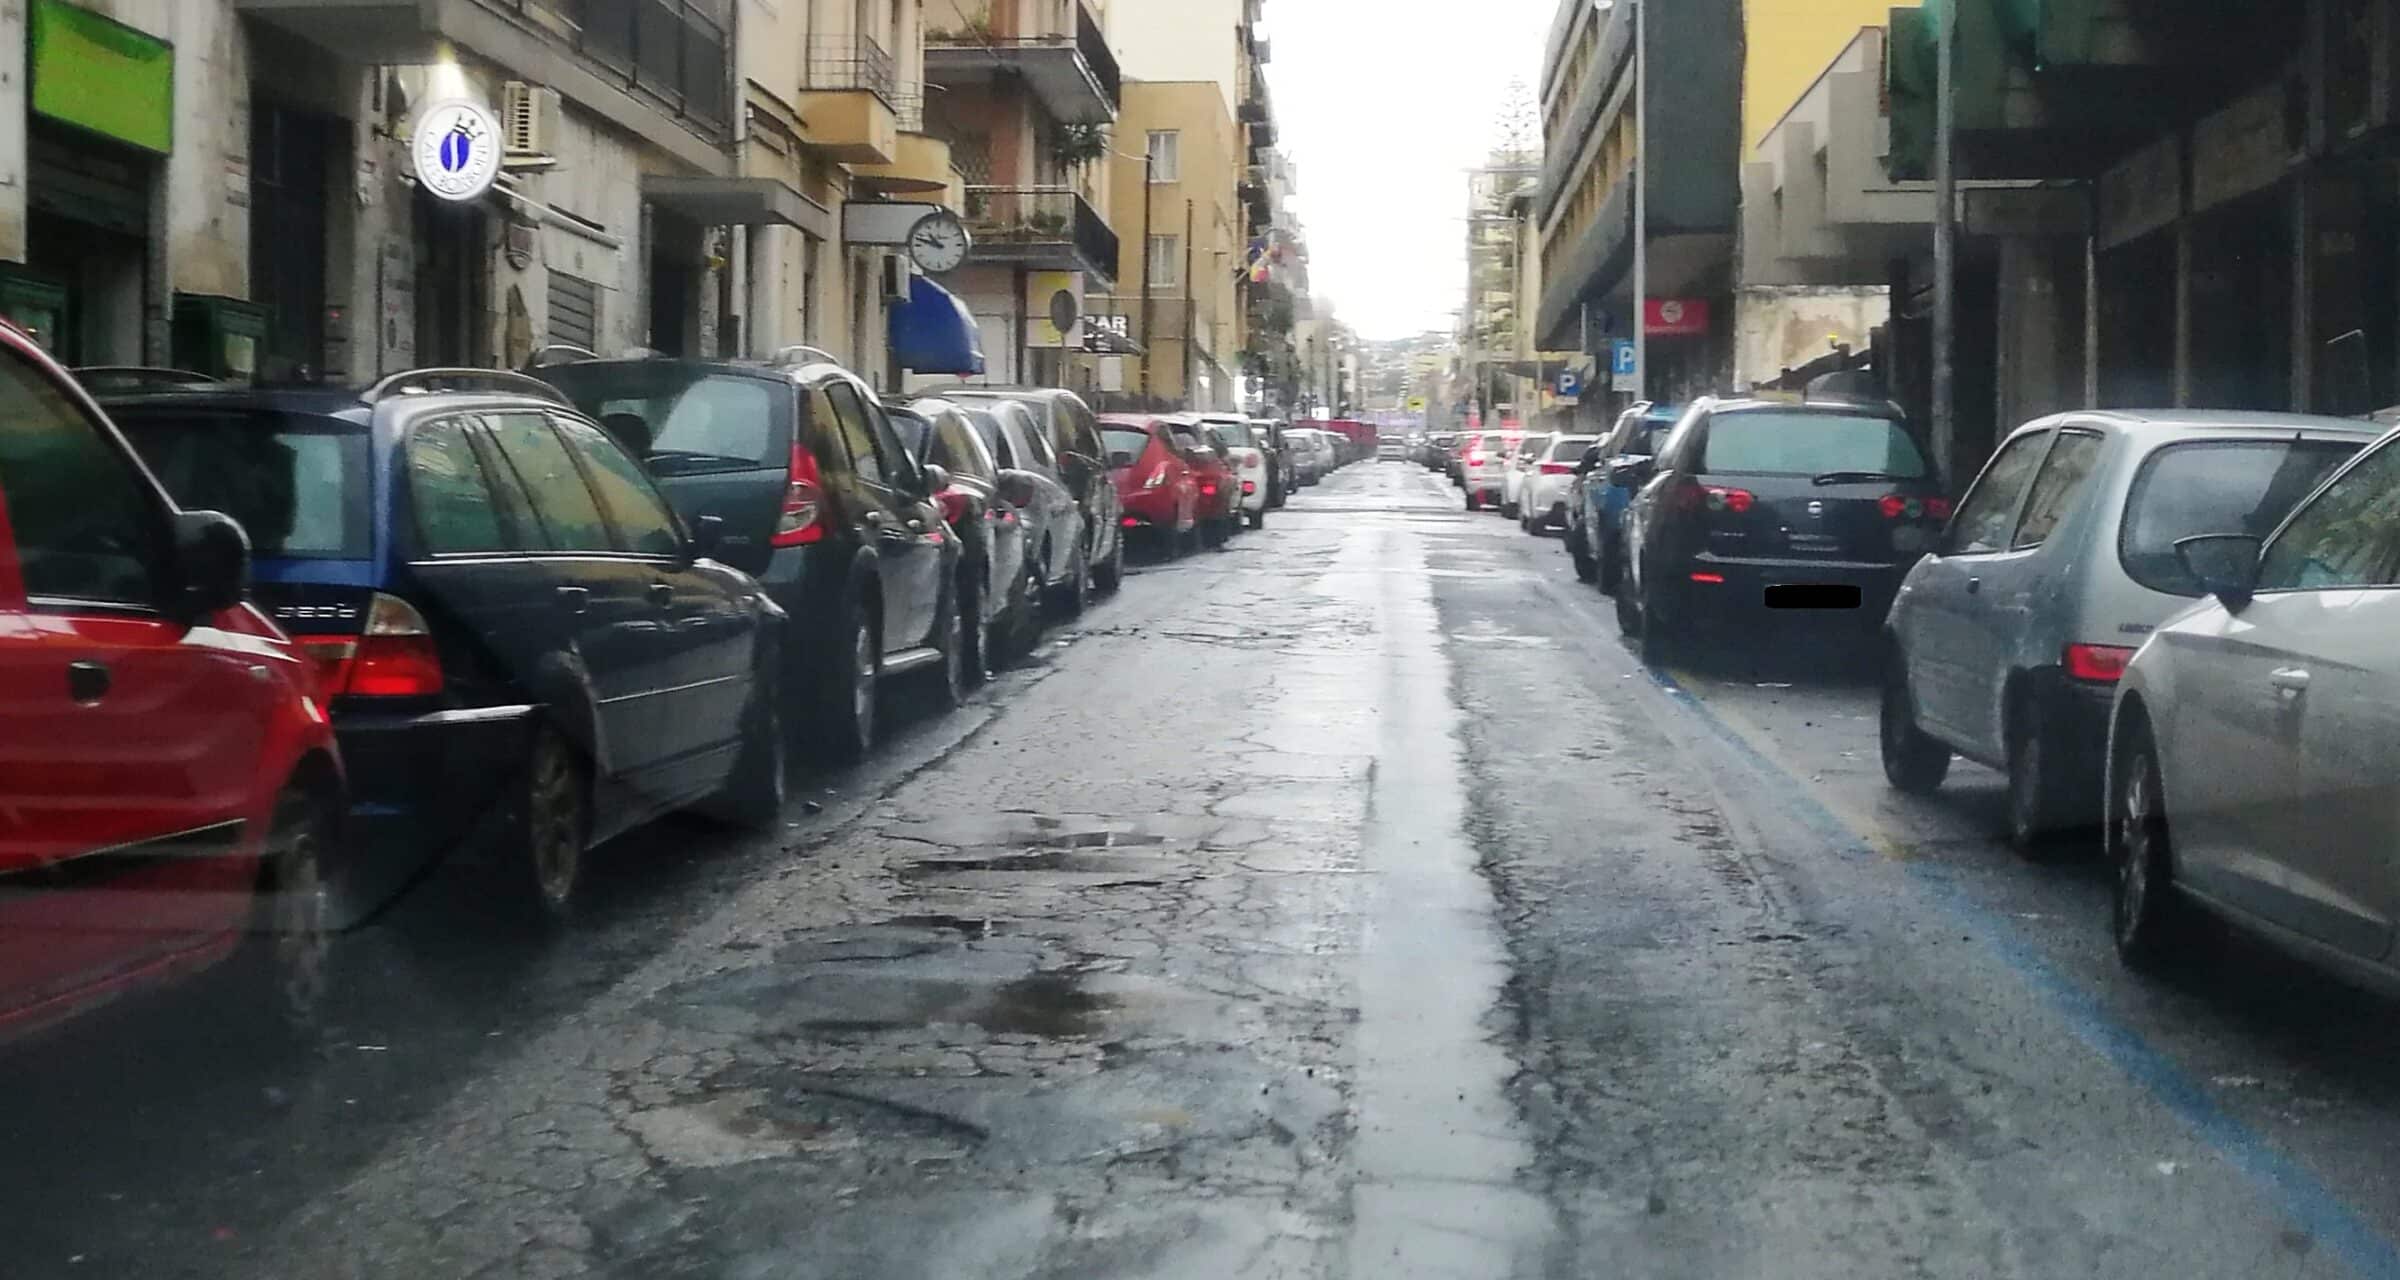 Catania, problematiche in via Duca degli Abruzzi. Le segnalazioni del consigliere Cardello